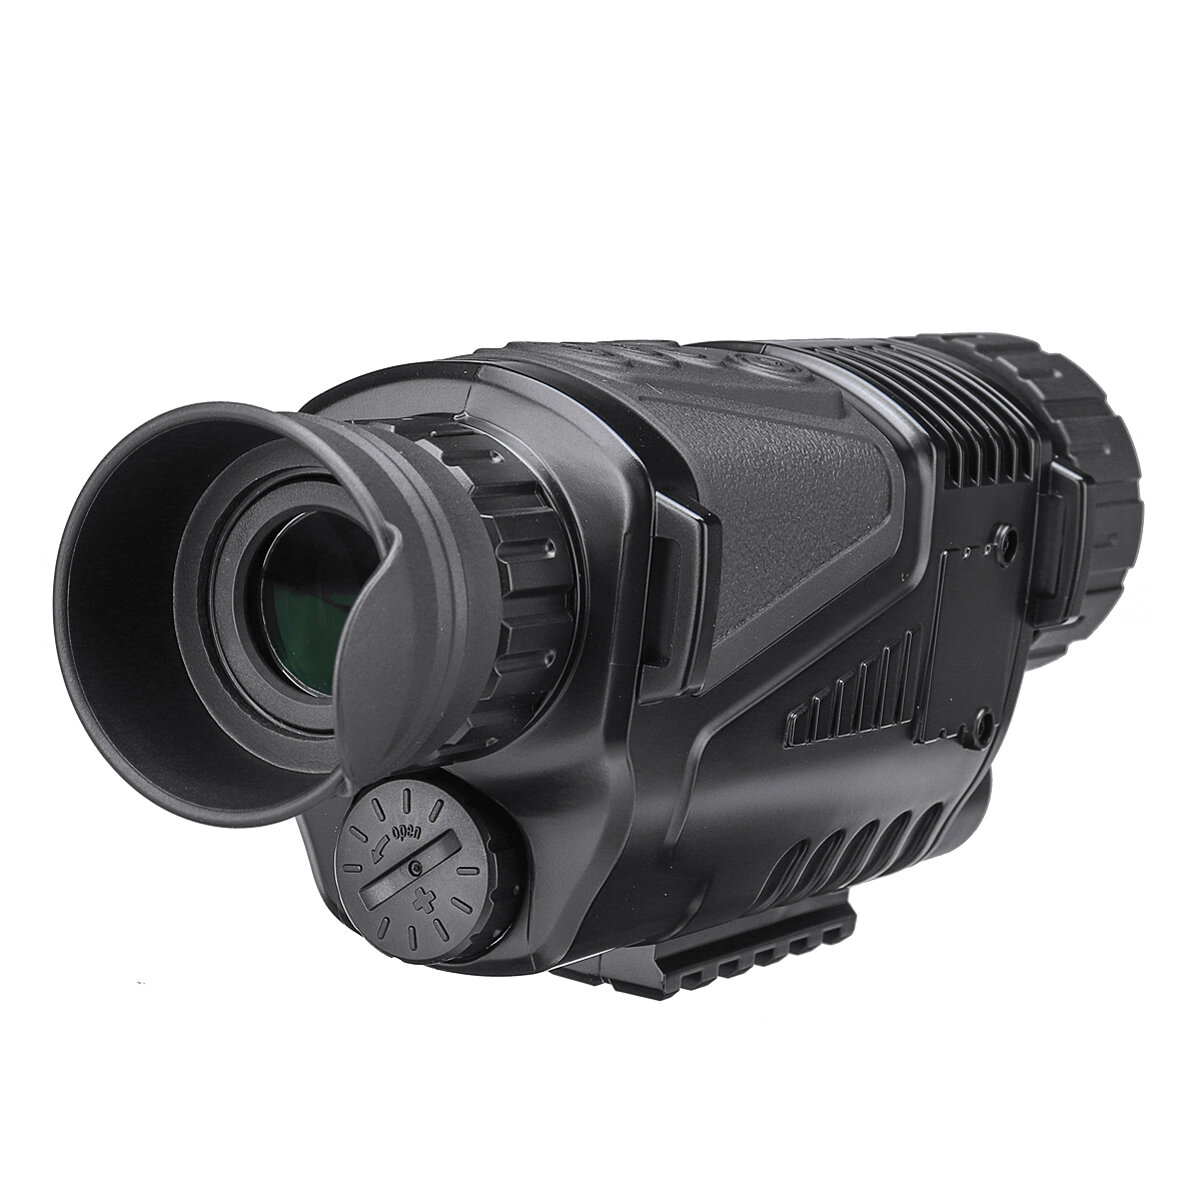 Dispositif de vision nocturne infrarouge HD à double usage Monoculaire Appareil photo 5X Zoom numérique Télescope pour les voyages en plein air et la chasse